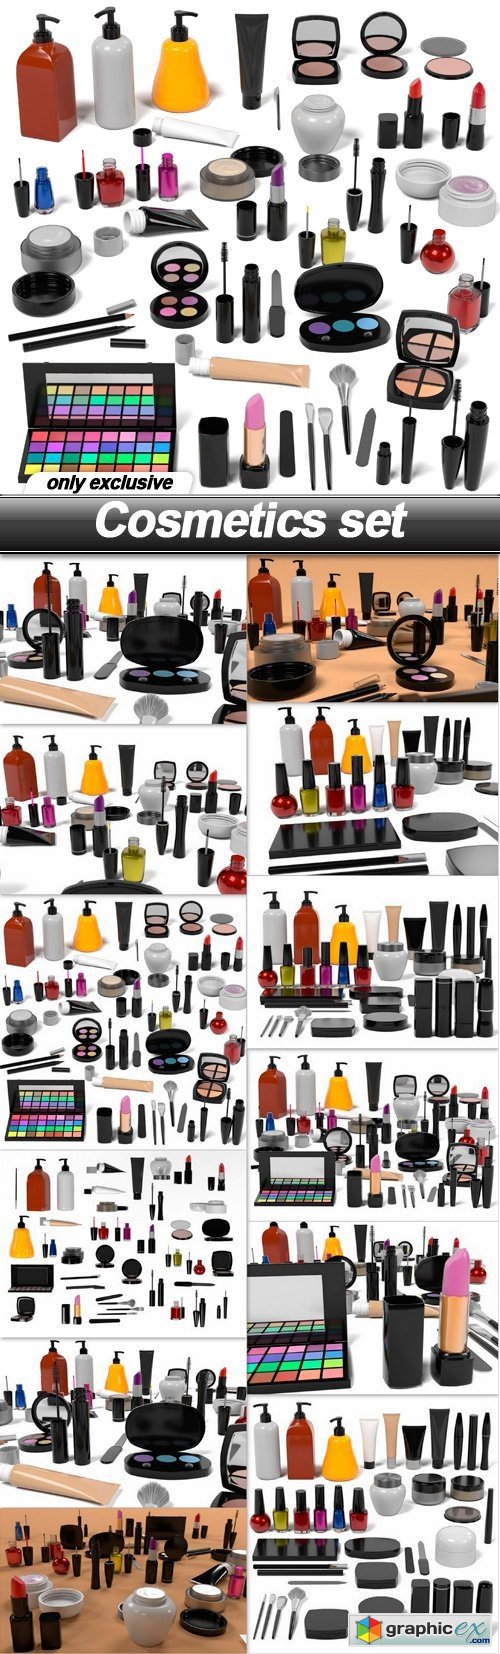 Cosmetics set - 12 UHQ JPEG